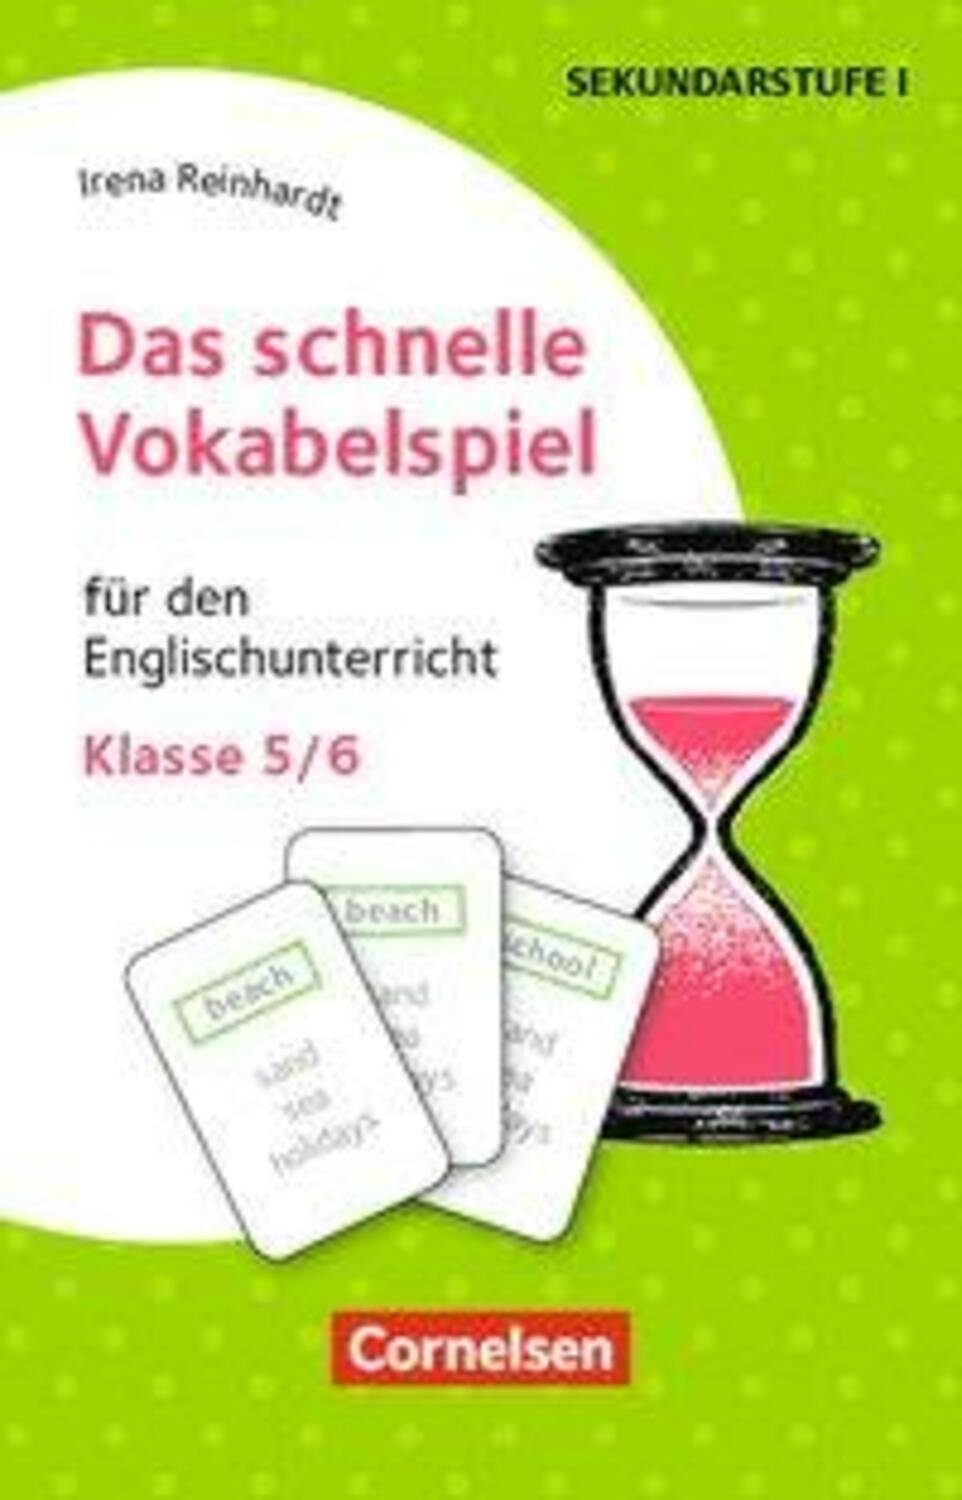 Cornelsen Verlag Spiel, den Für Englischunterricht